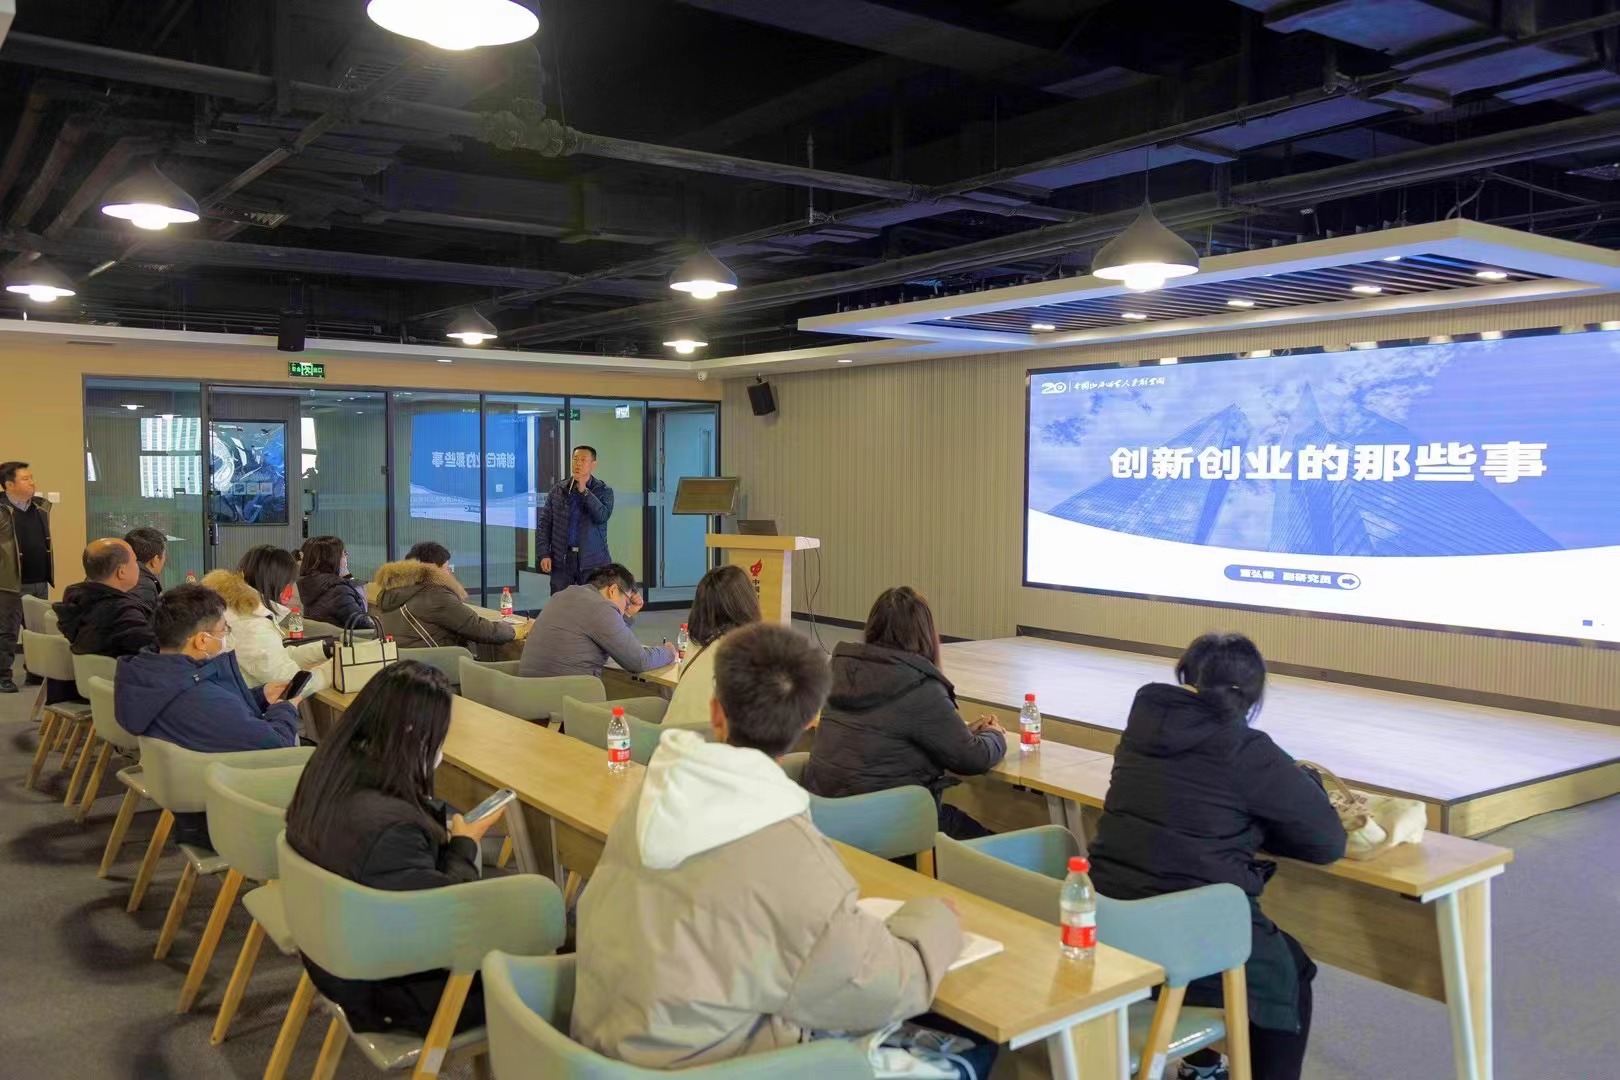 中国山西留创园于12月4日分两批次为山西师范大学近50名大学生创业项目指导教师开展集中培训